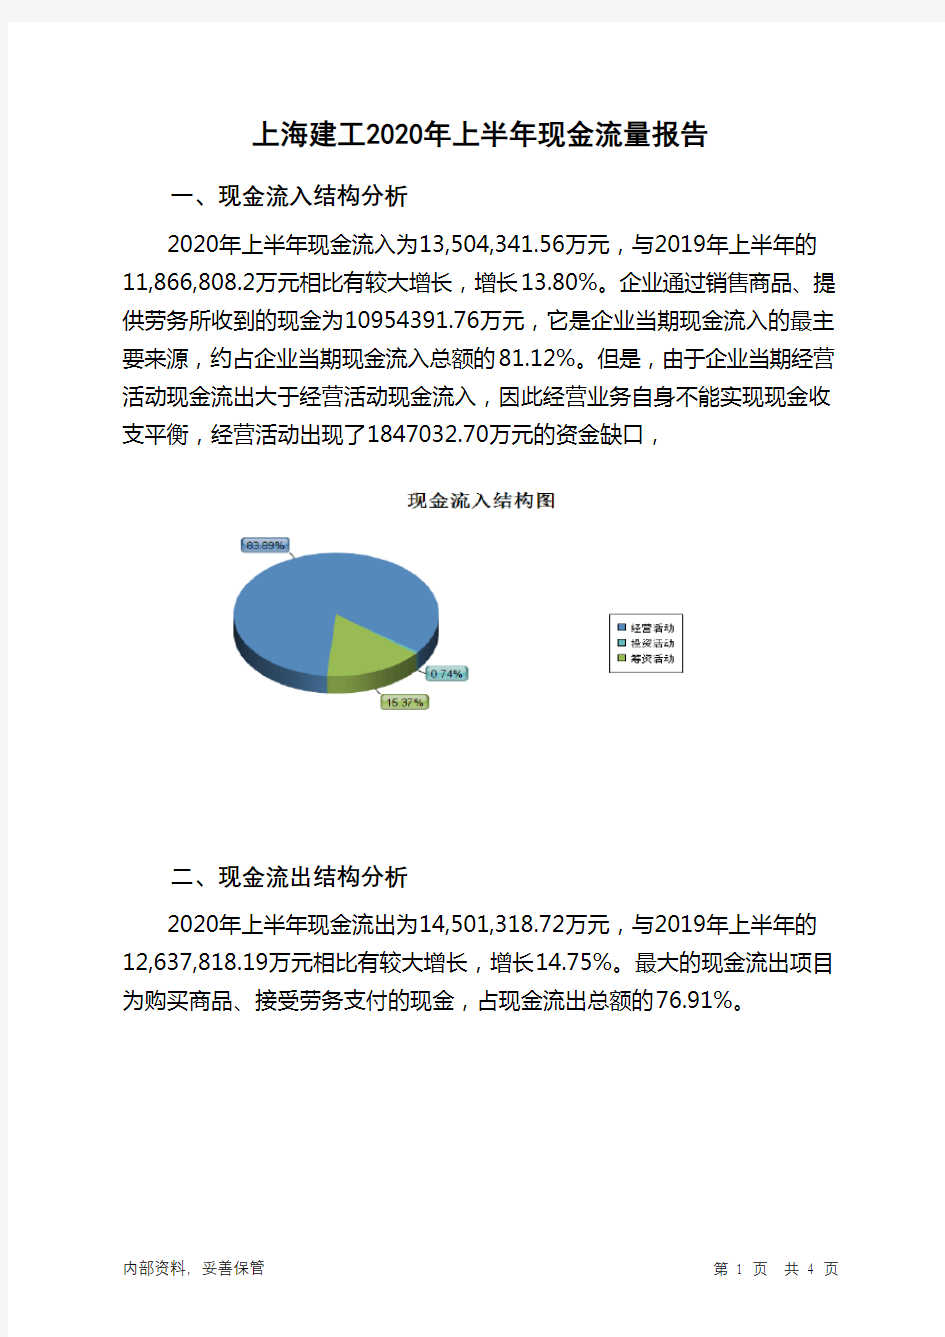 上海建工2020年上半年现金流量报告